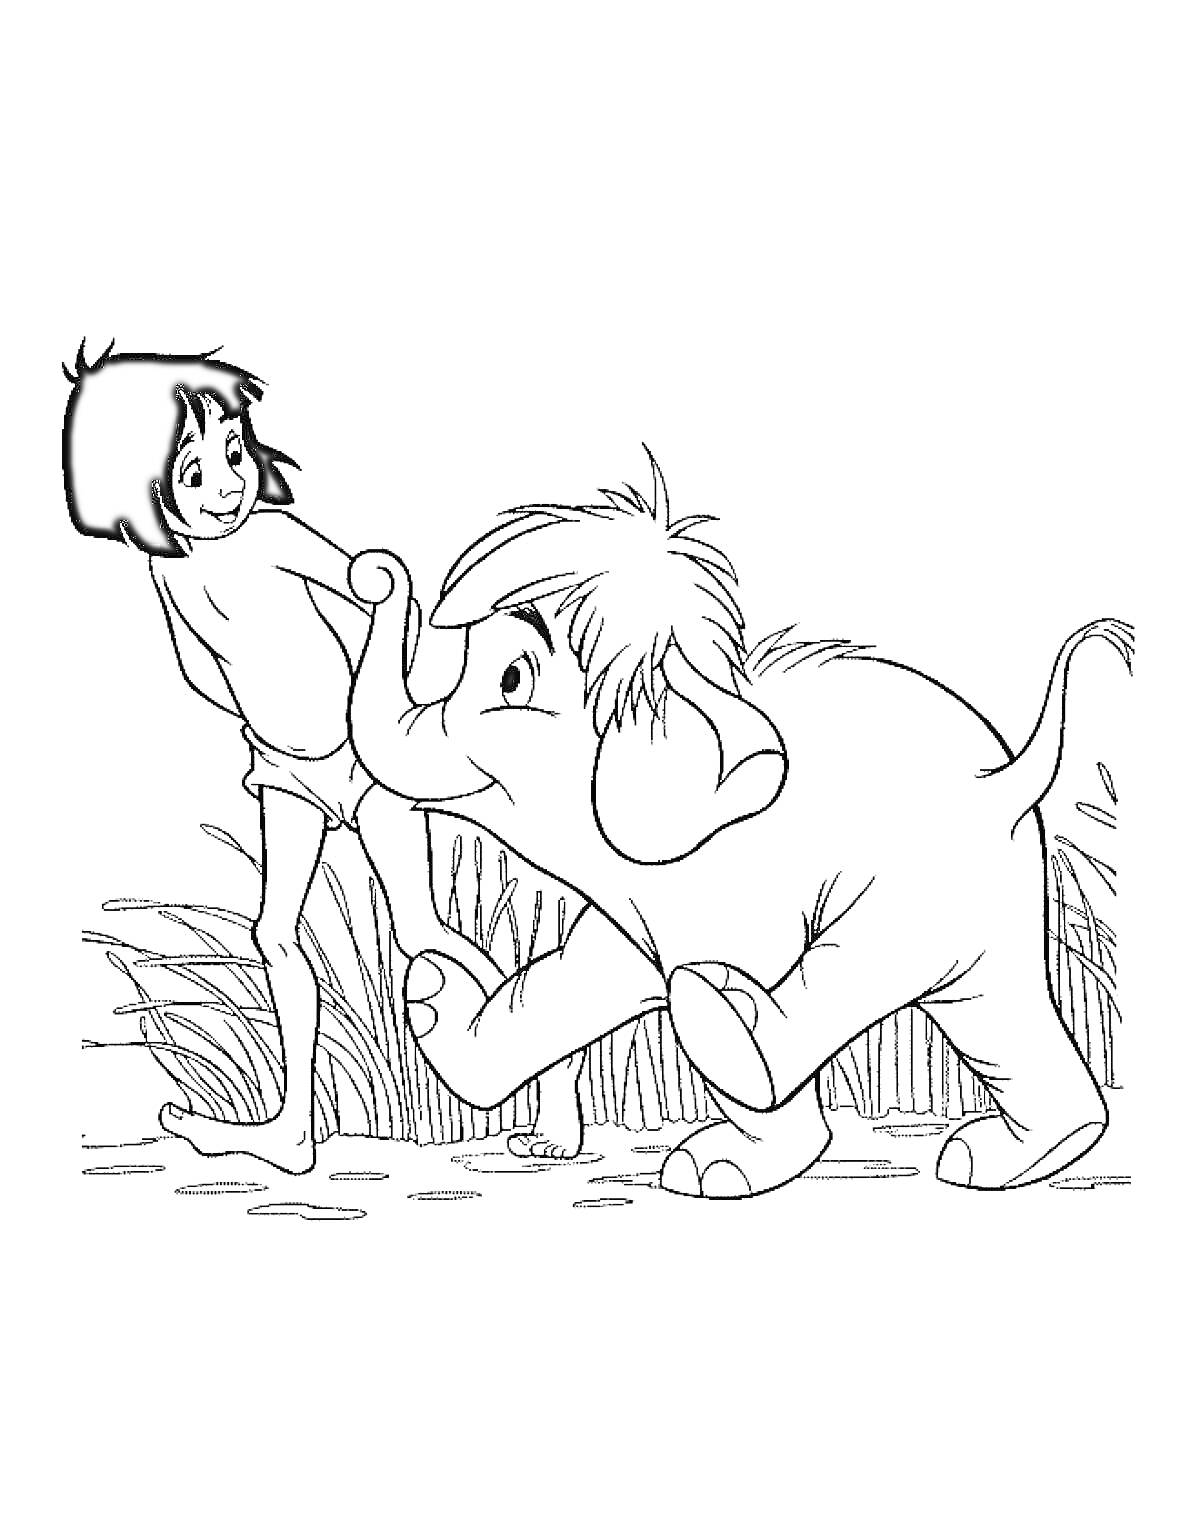 Мальчик и слоненок на тропинке среди травы из Книги Джунглей